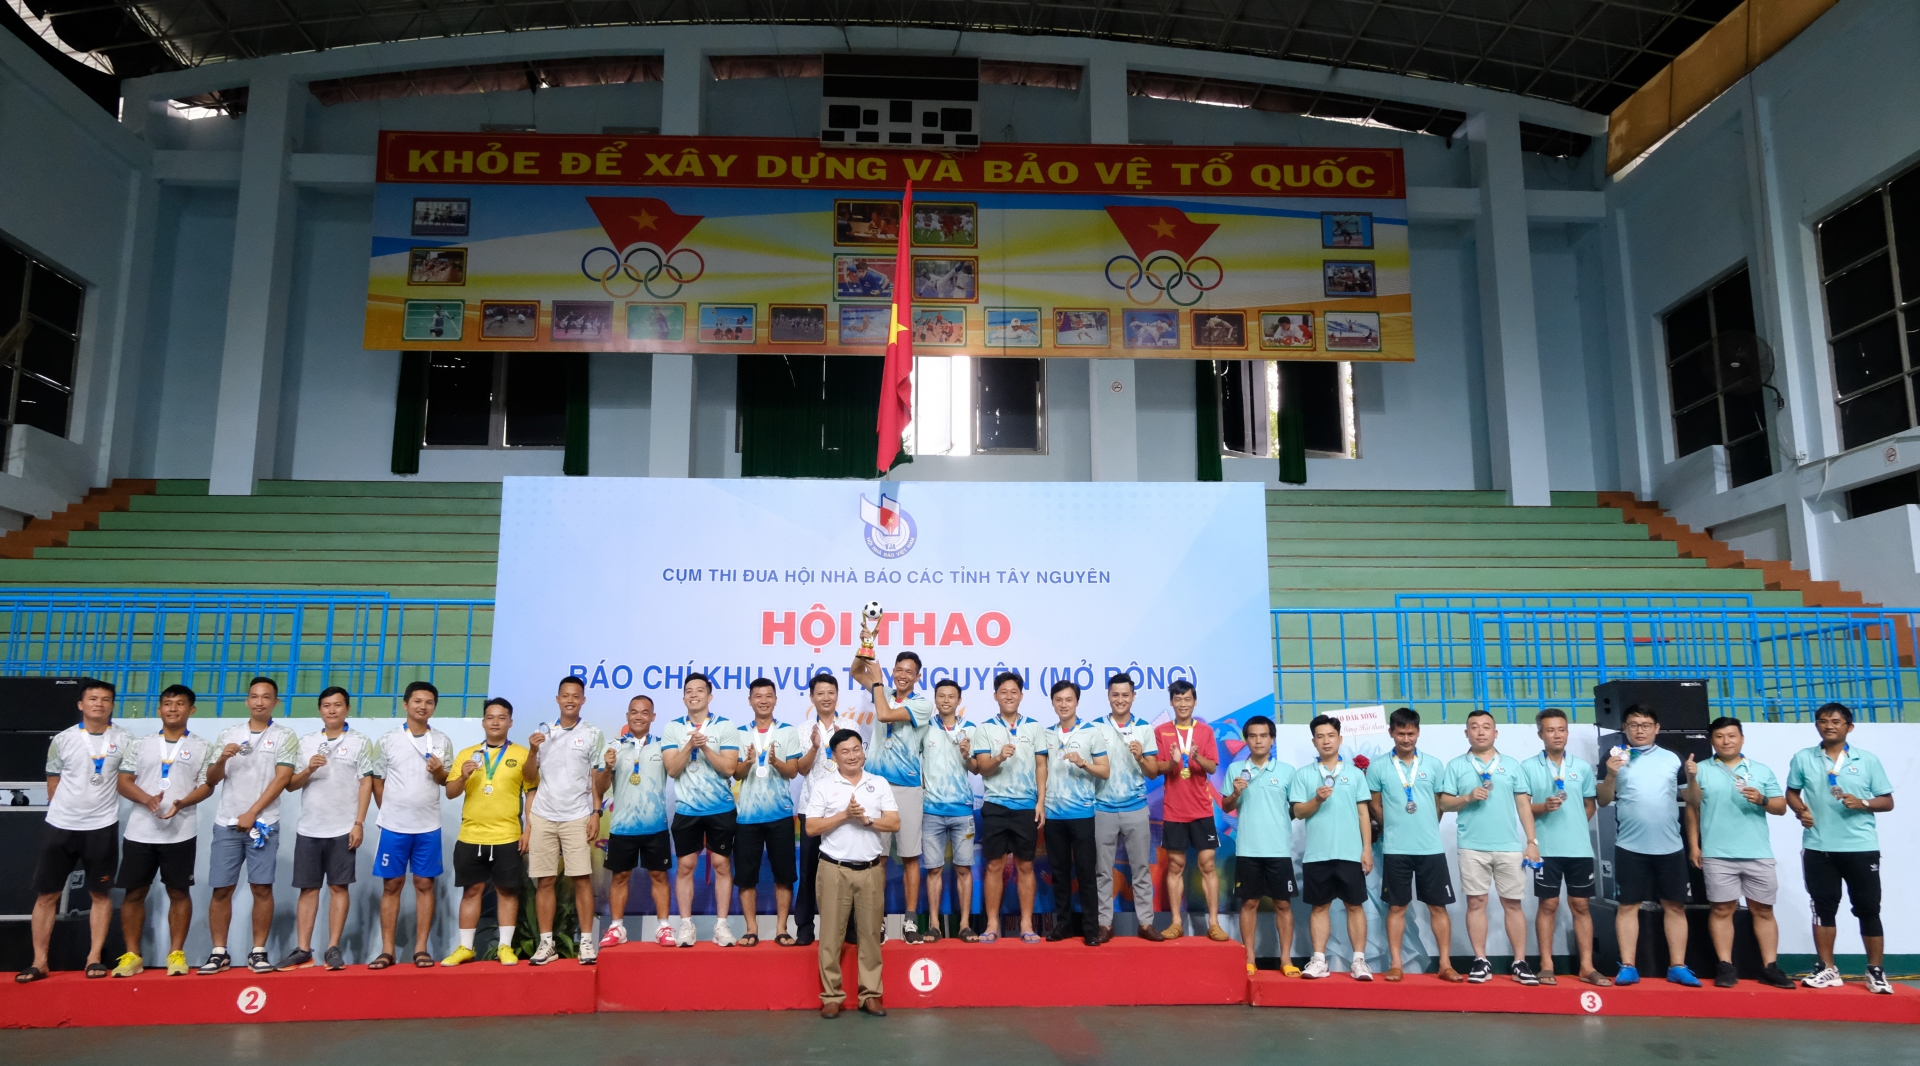 Đội bóng đá Hội nhà báo tỉnh Đăk Nông lên ngôi vô địch